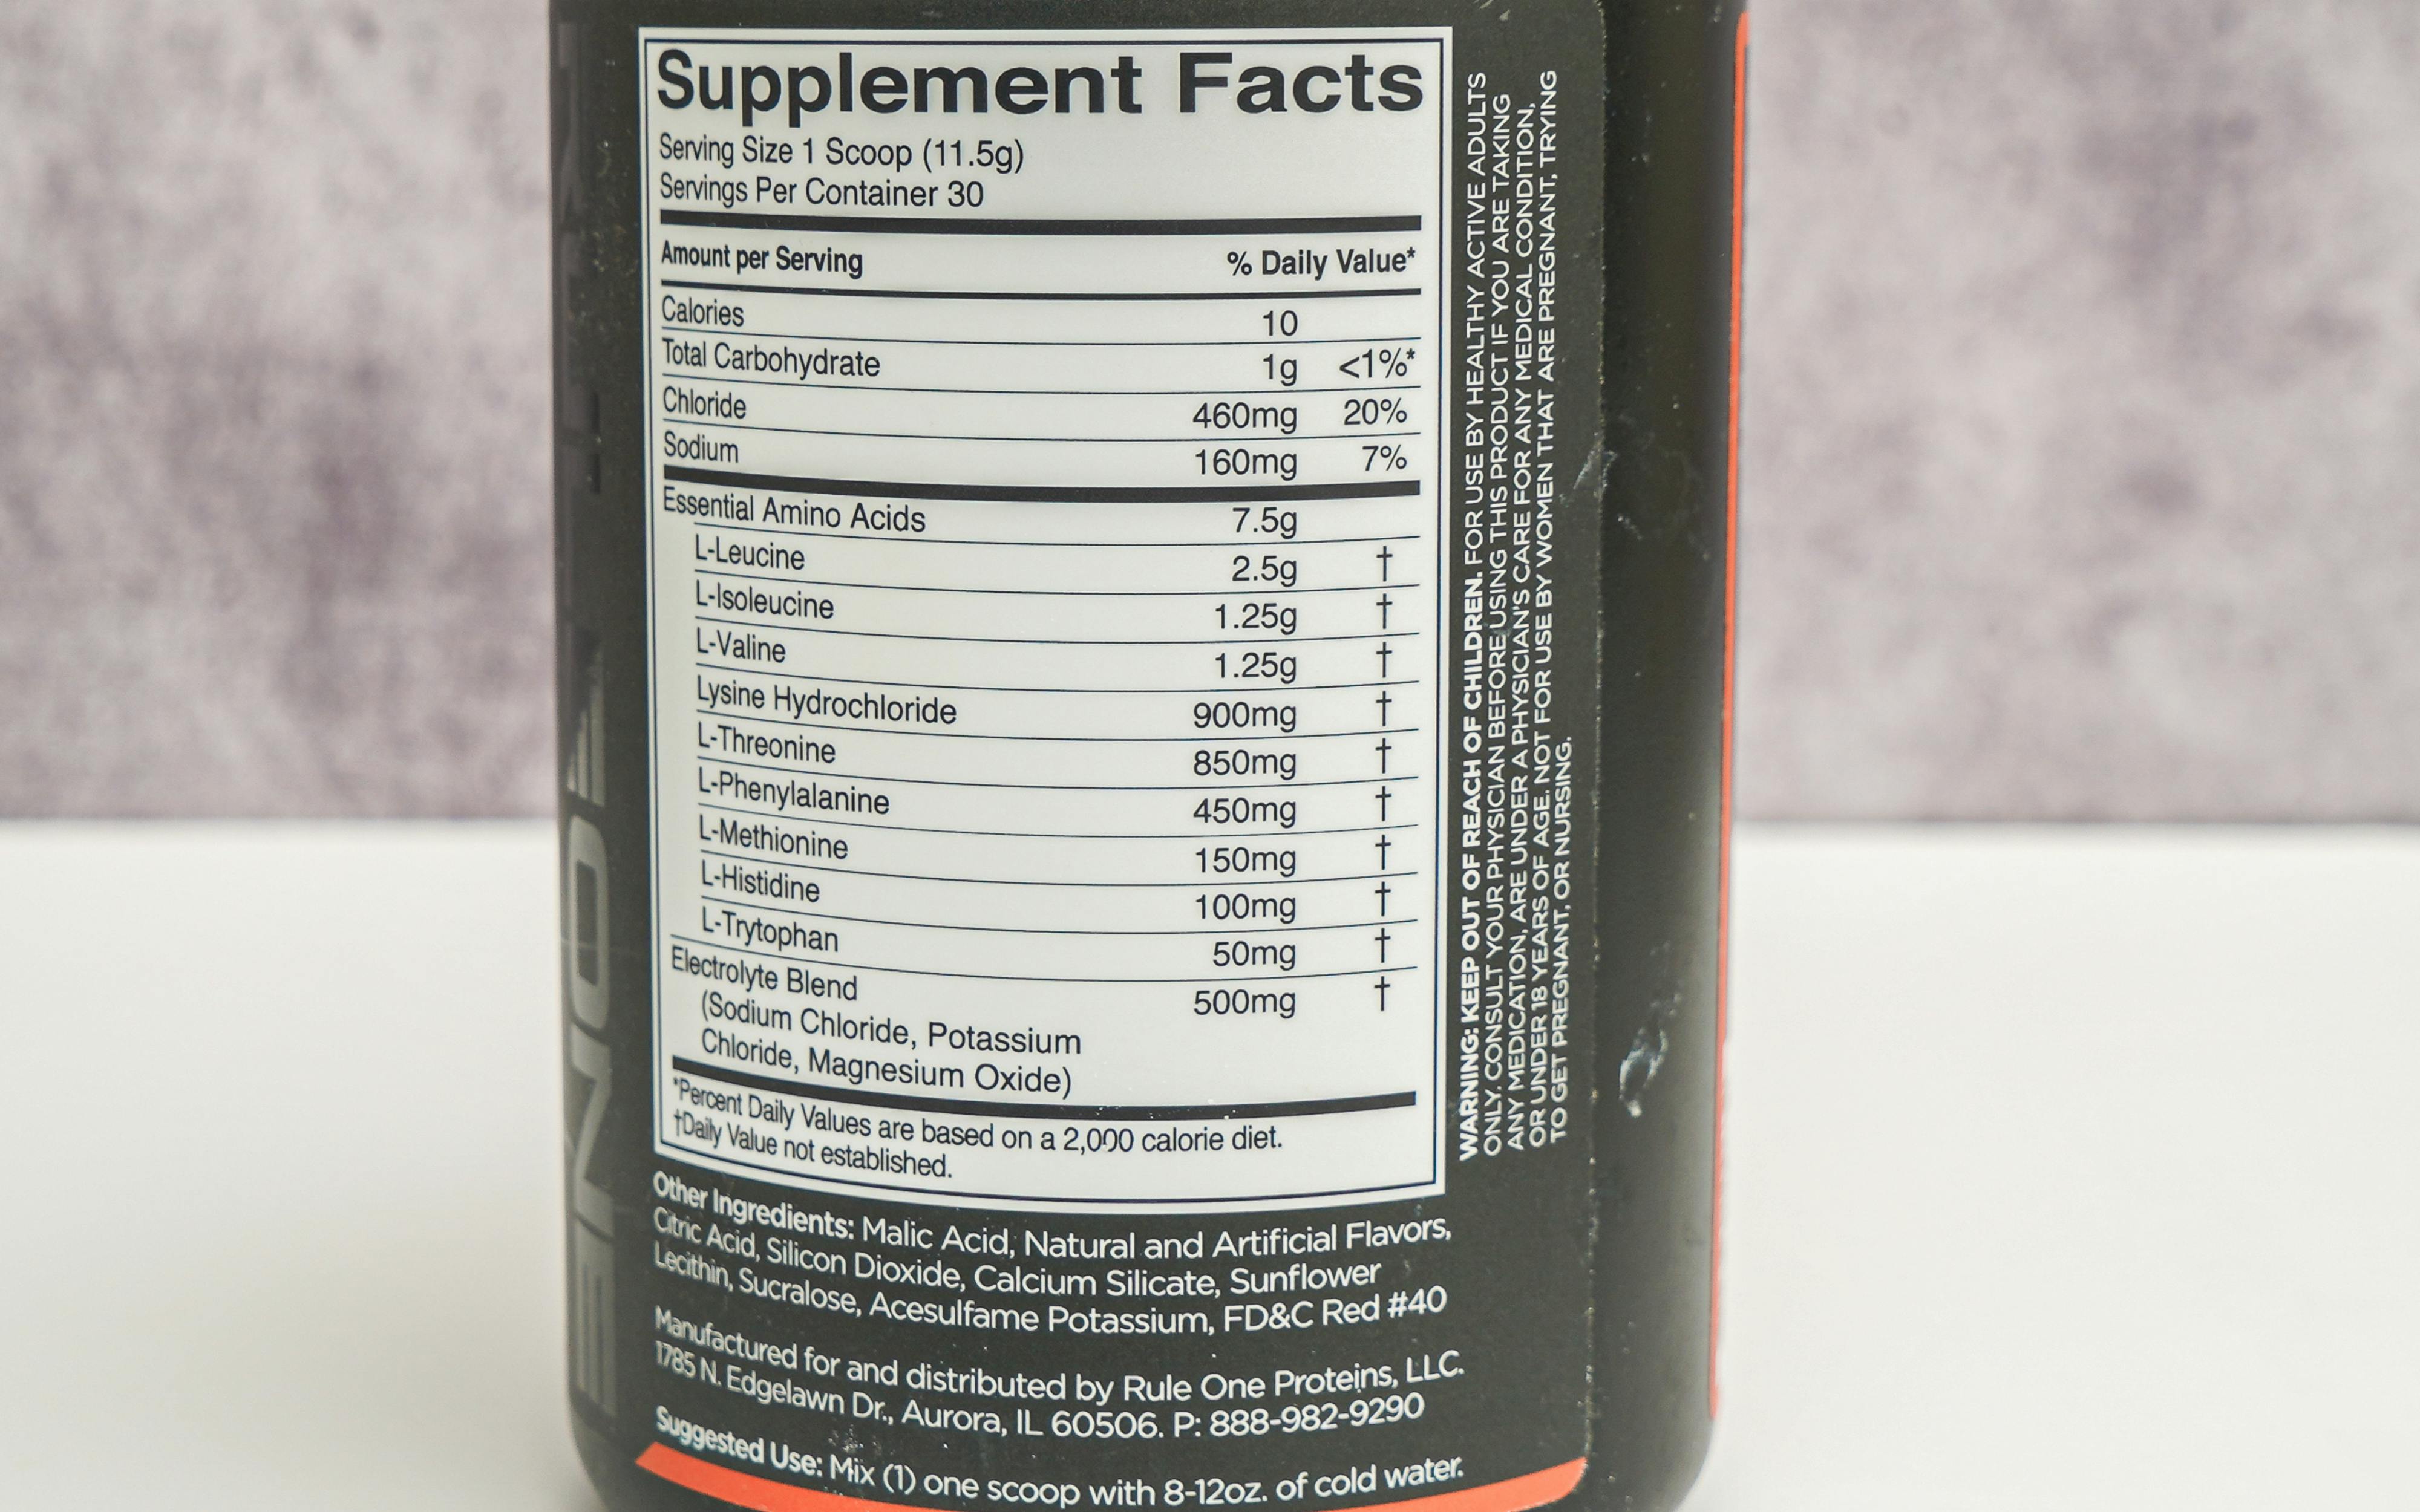 Best Amino Acid Supplements: Top 5 of 2023